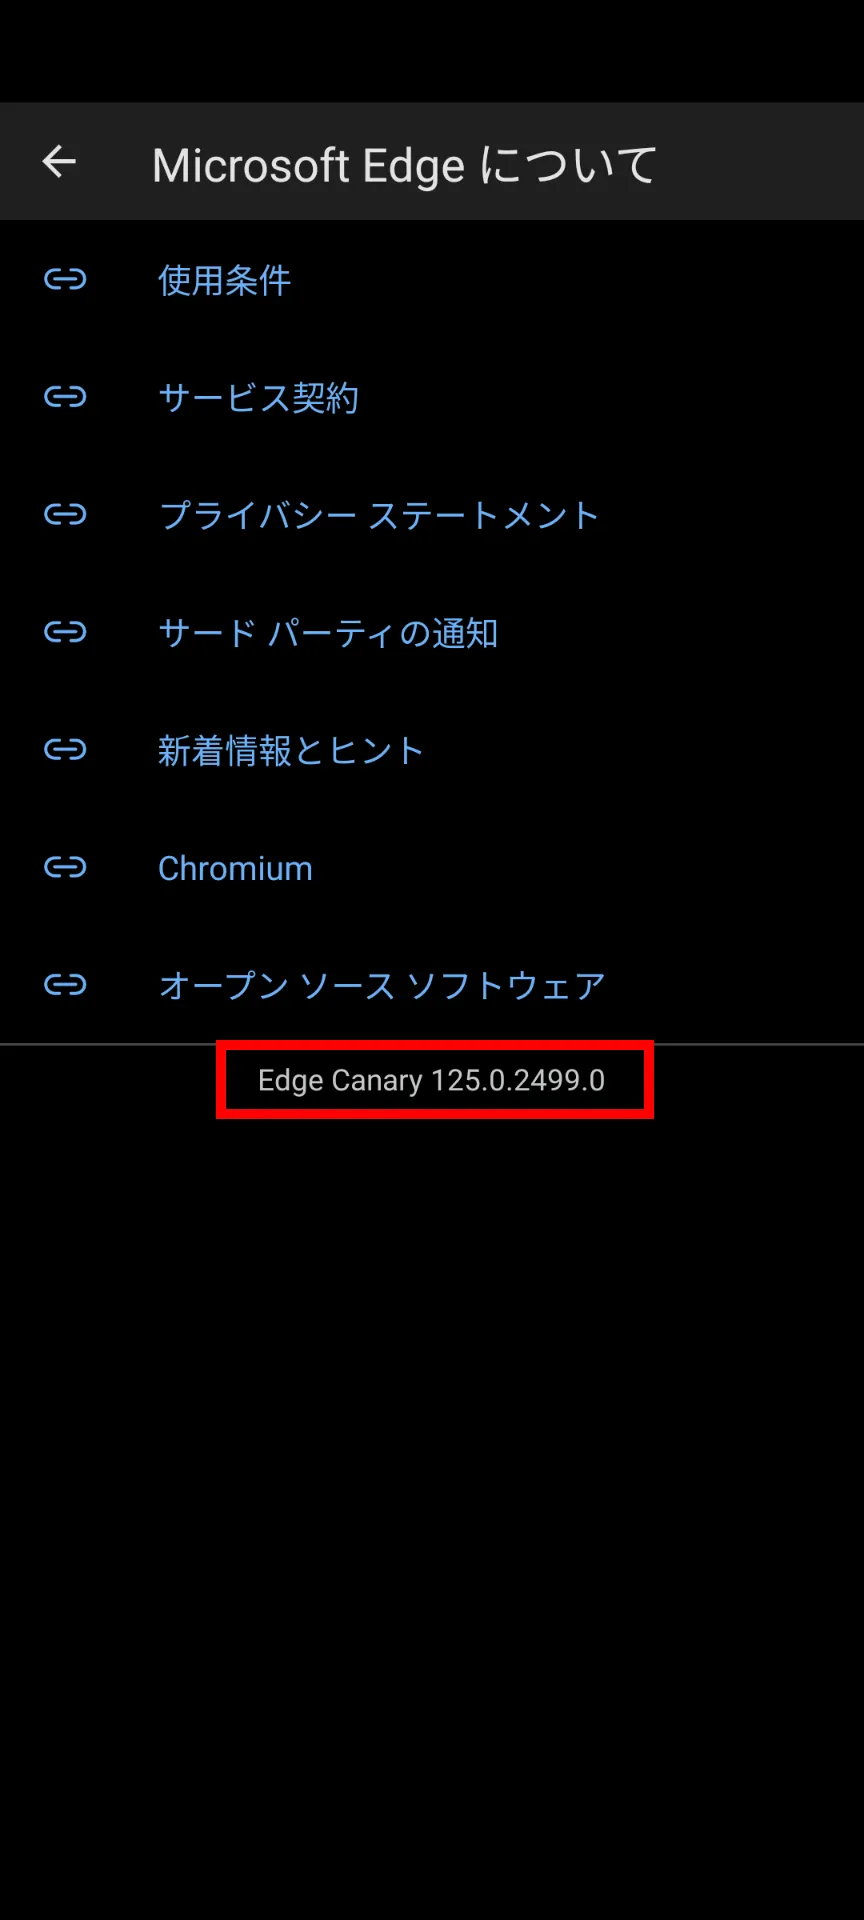 Edgeのバージョン情報のスクリーンショット。バージョン番号が強調されている